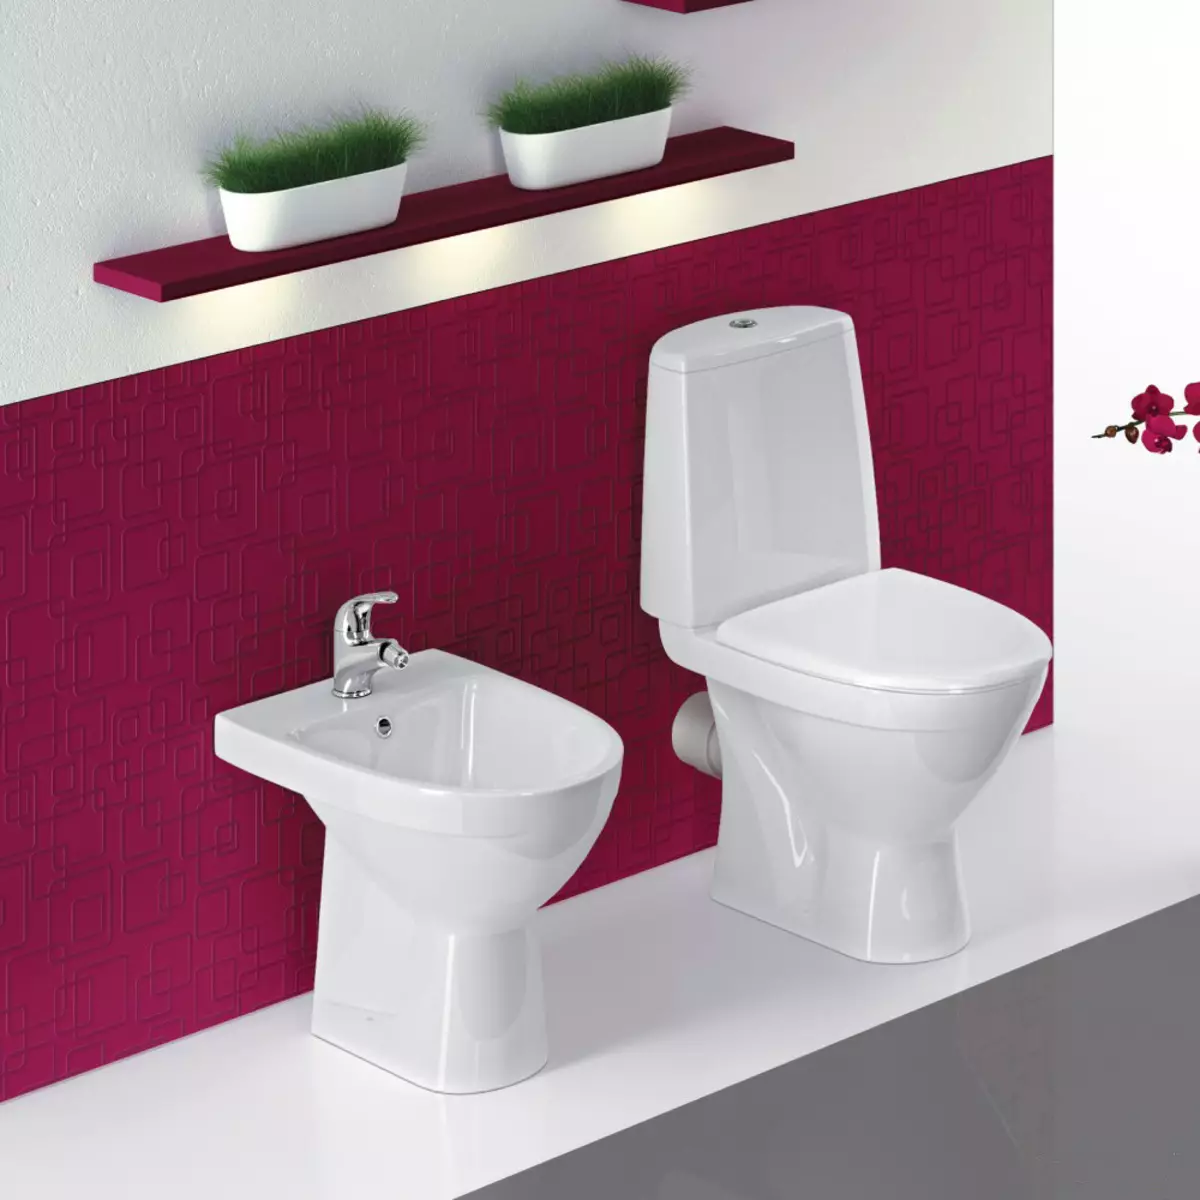 Toilet Bowl na may oblique release: Na-import na bearing unitaz-compact, edisyon sulok, cable compact toilet at iba pang mga modelo na may pahilig release 10523_30